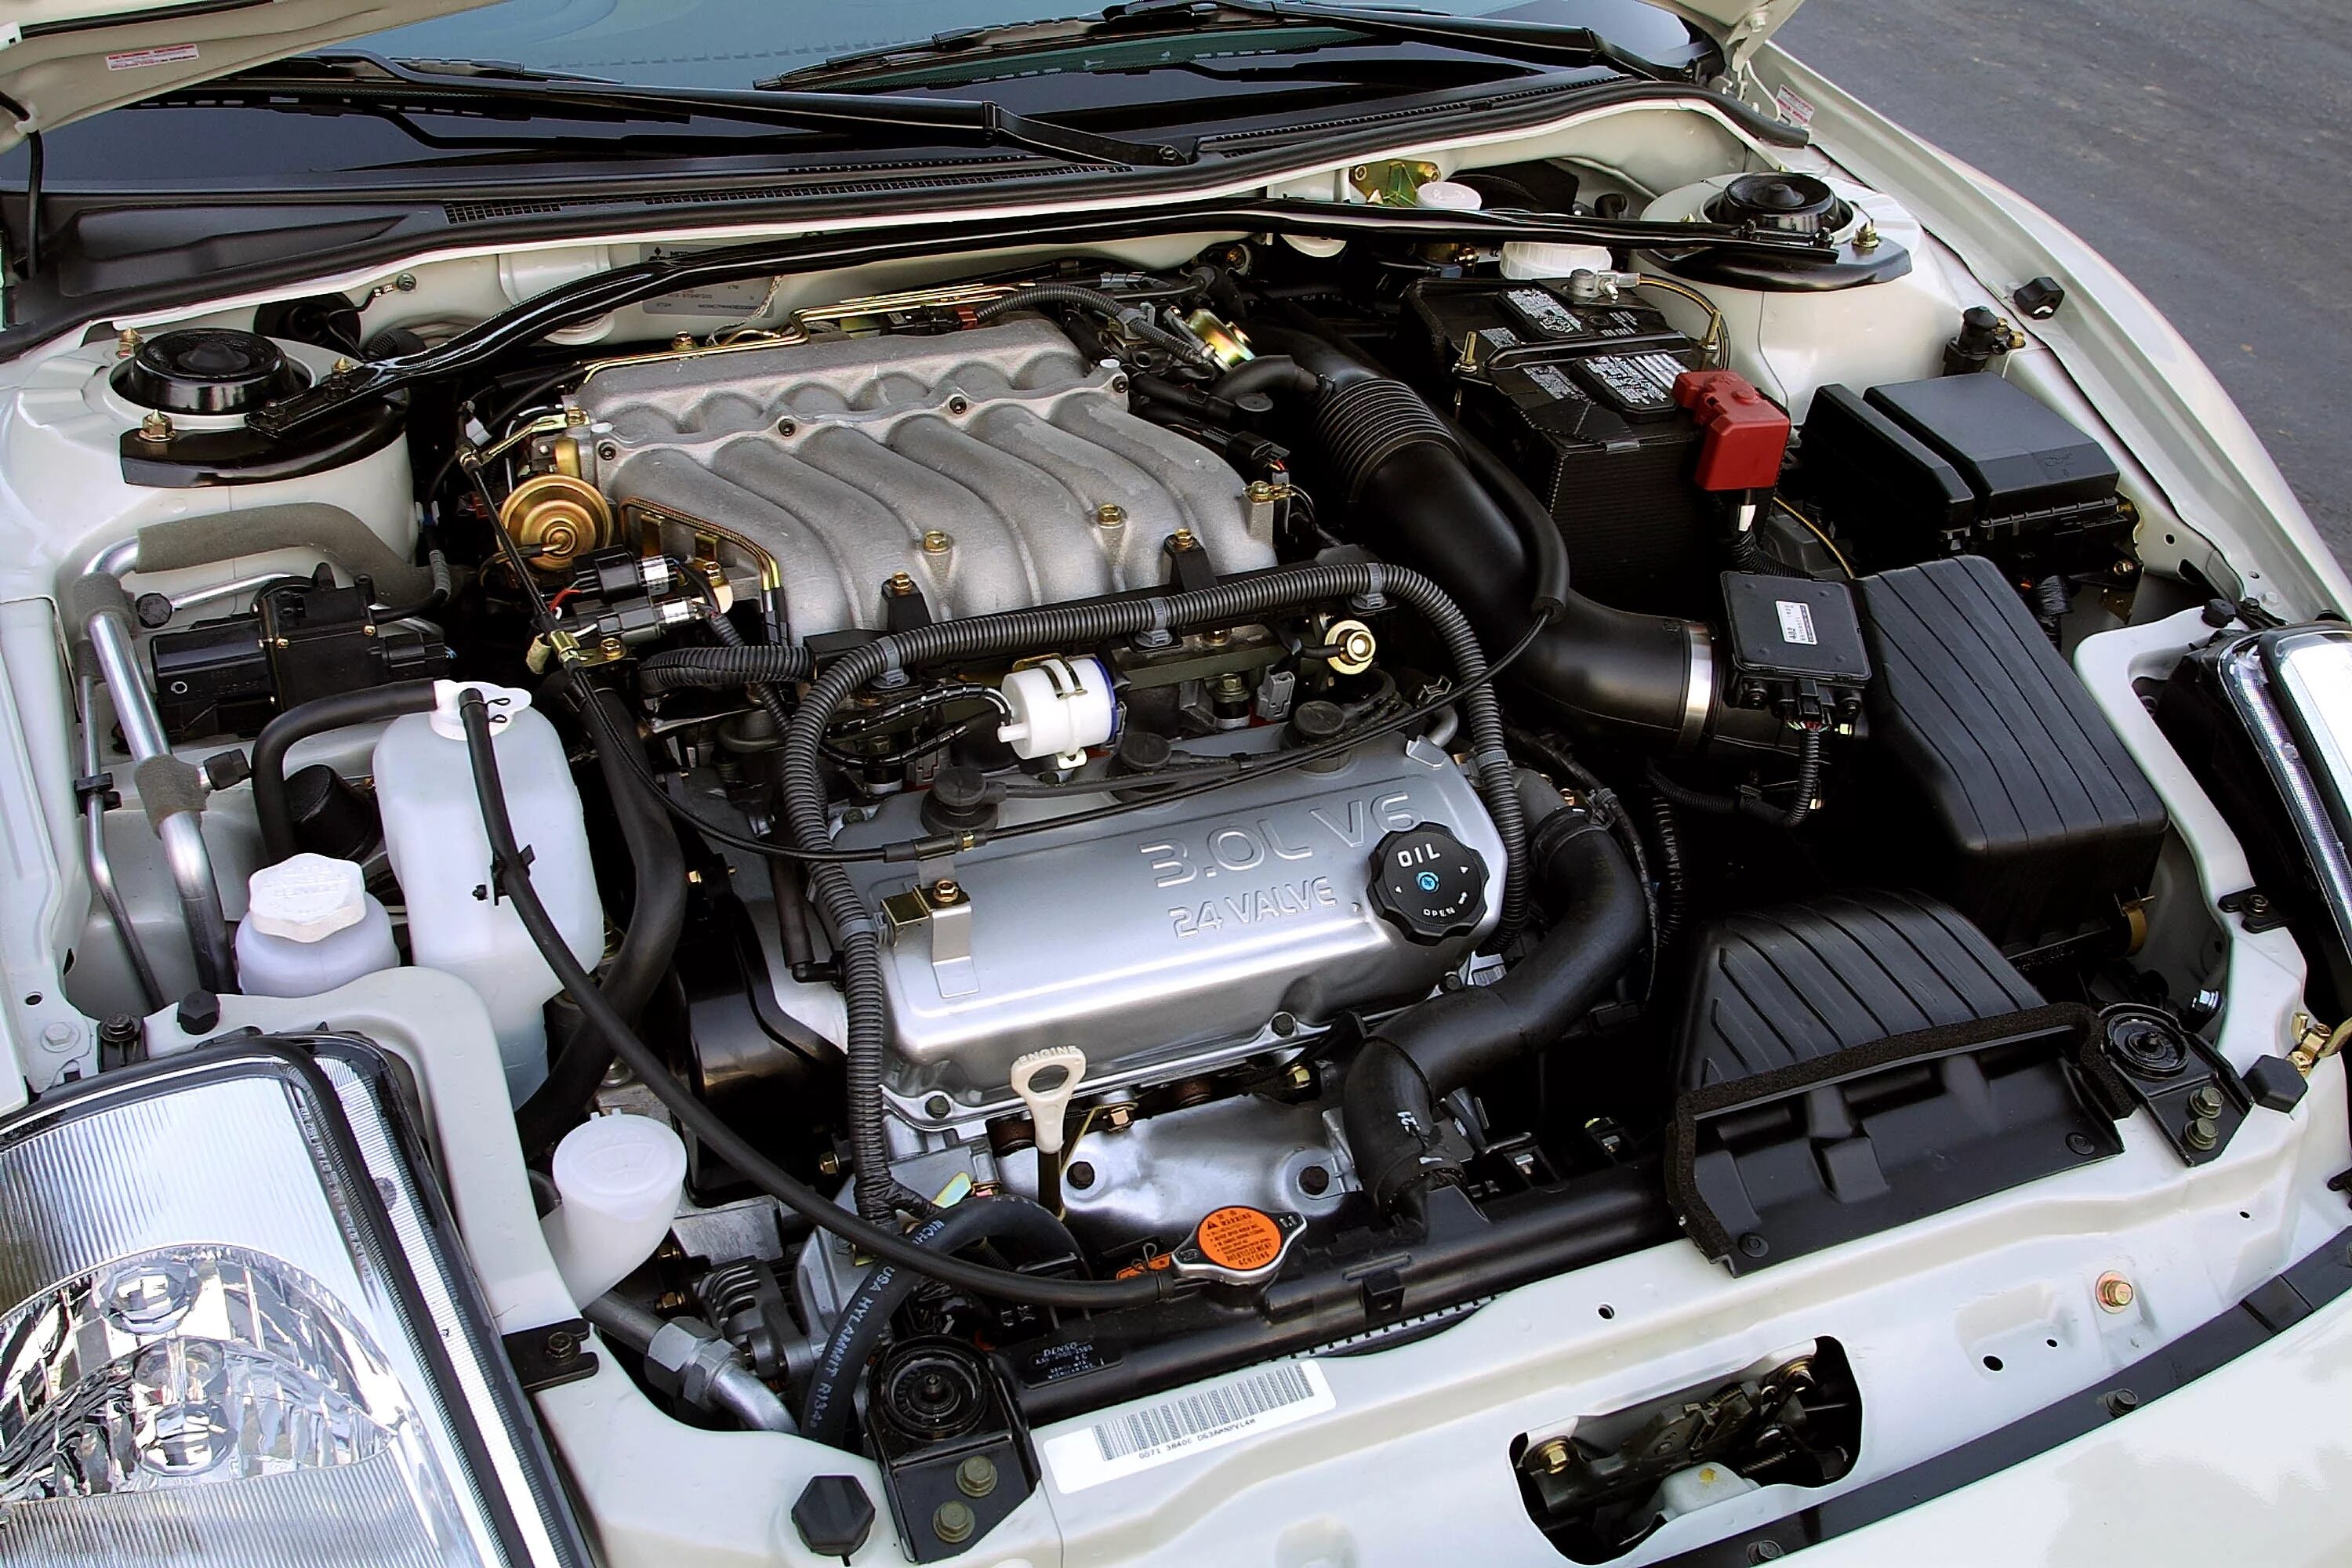 Митсубиси Эклипс 2 двигатель. Mitsubishi Eclipse 3g 3.0 двигатель. Двигатель Митсубиси Эклипс 2.4. Mitsubishi Eclipse v6 мотор.